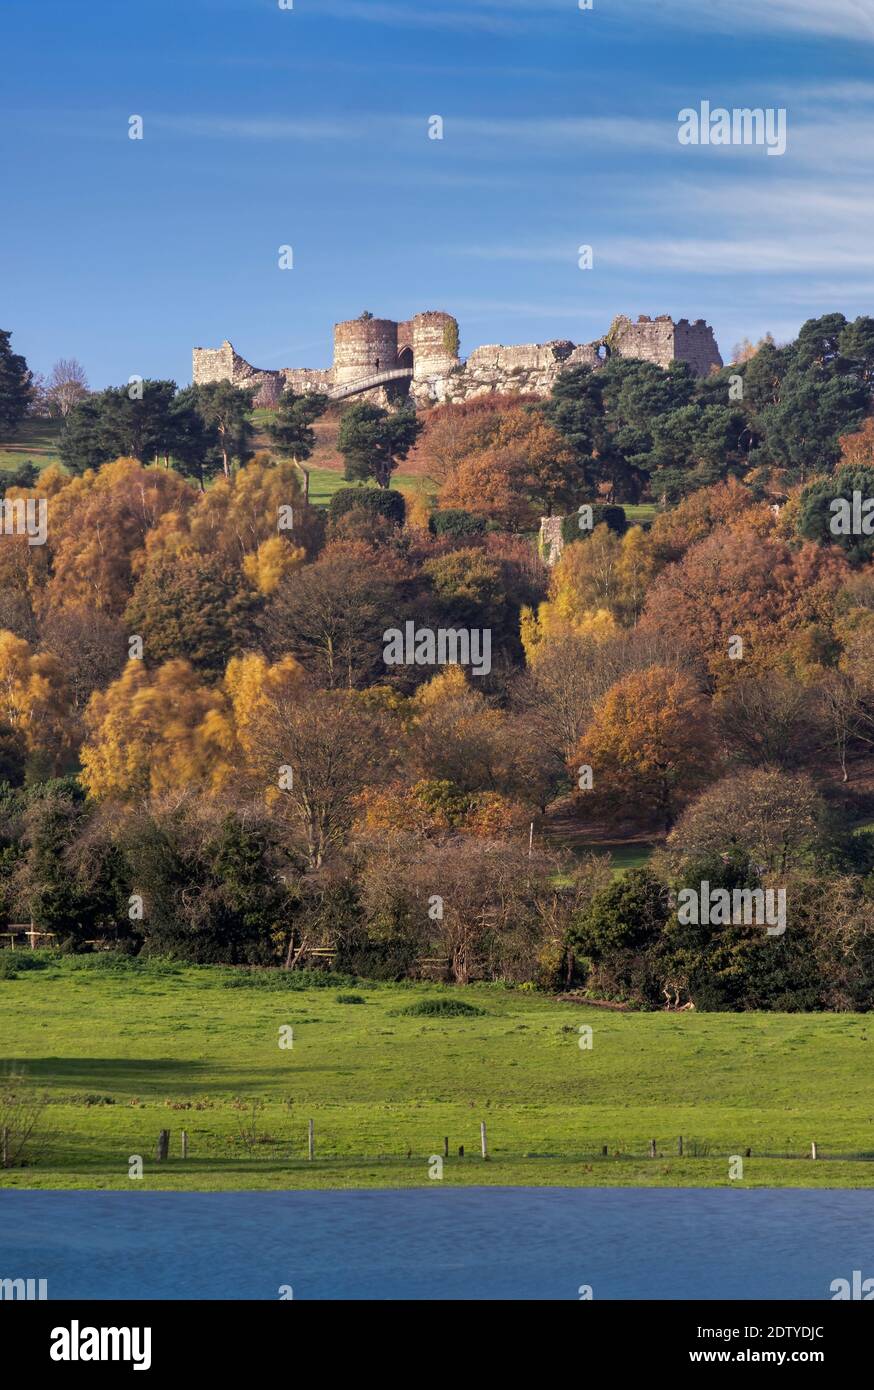 Beeston Castle in autumn, Beeston, Cheshire, England, UK Stock Photo